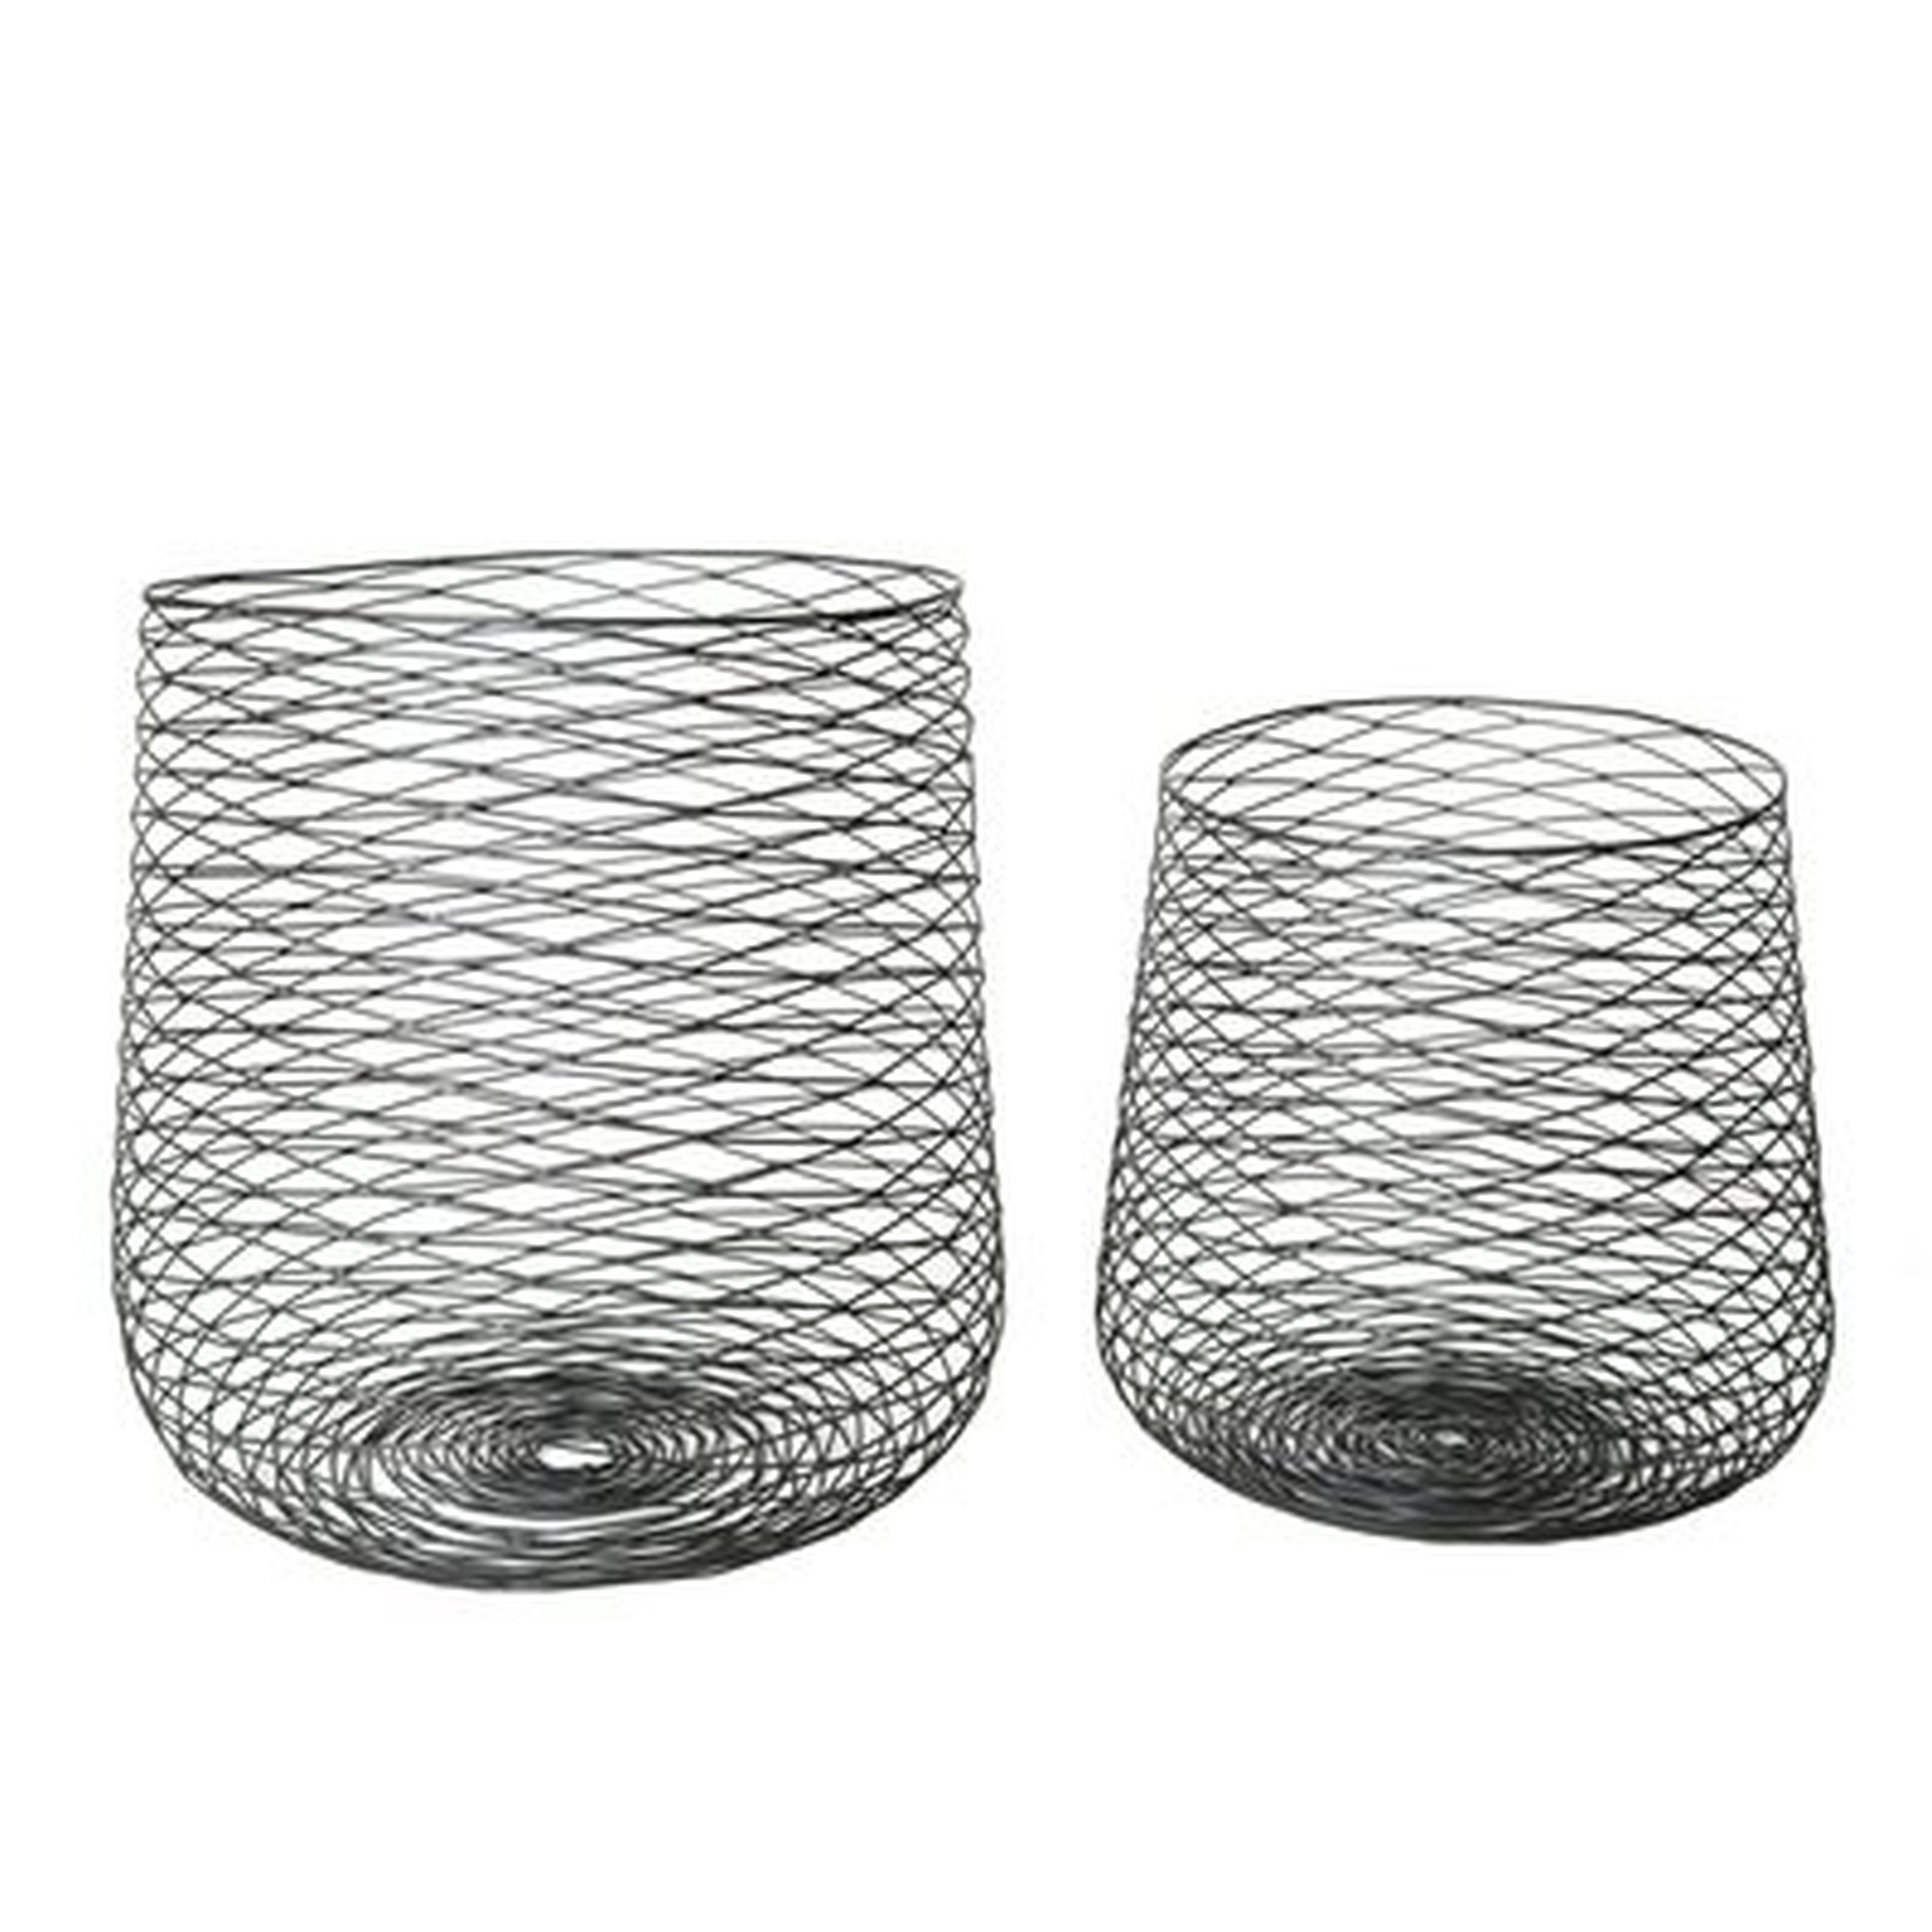 2 Piece Steel Wire Basket Set - Wayfair